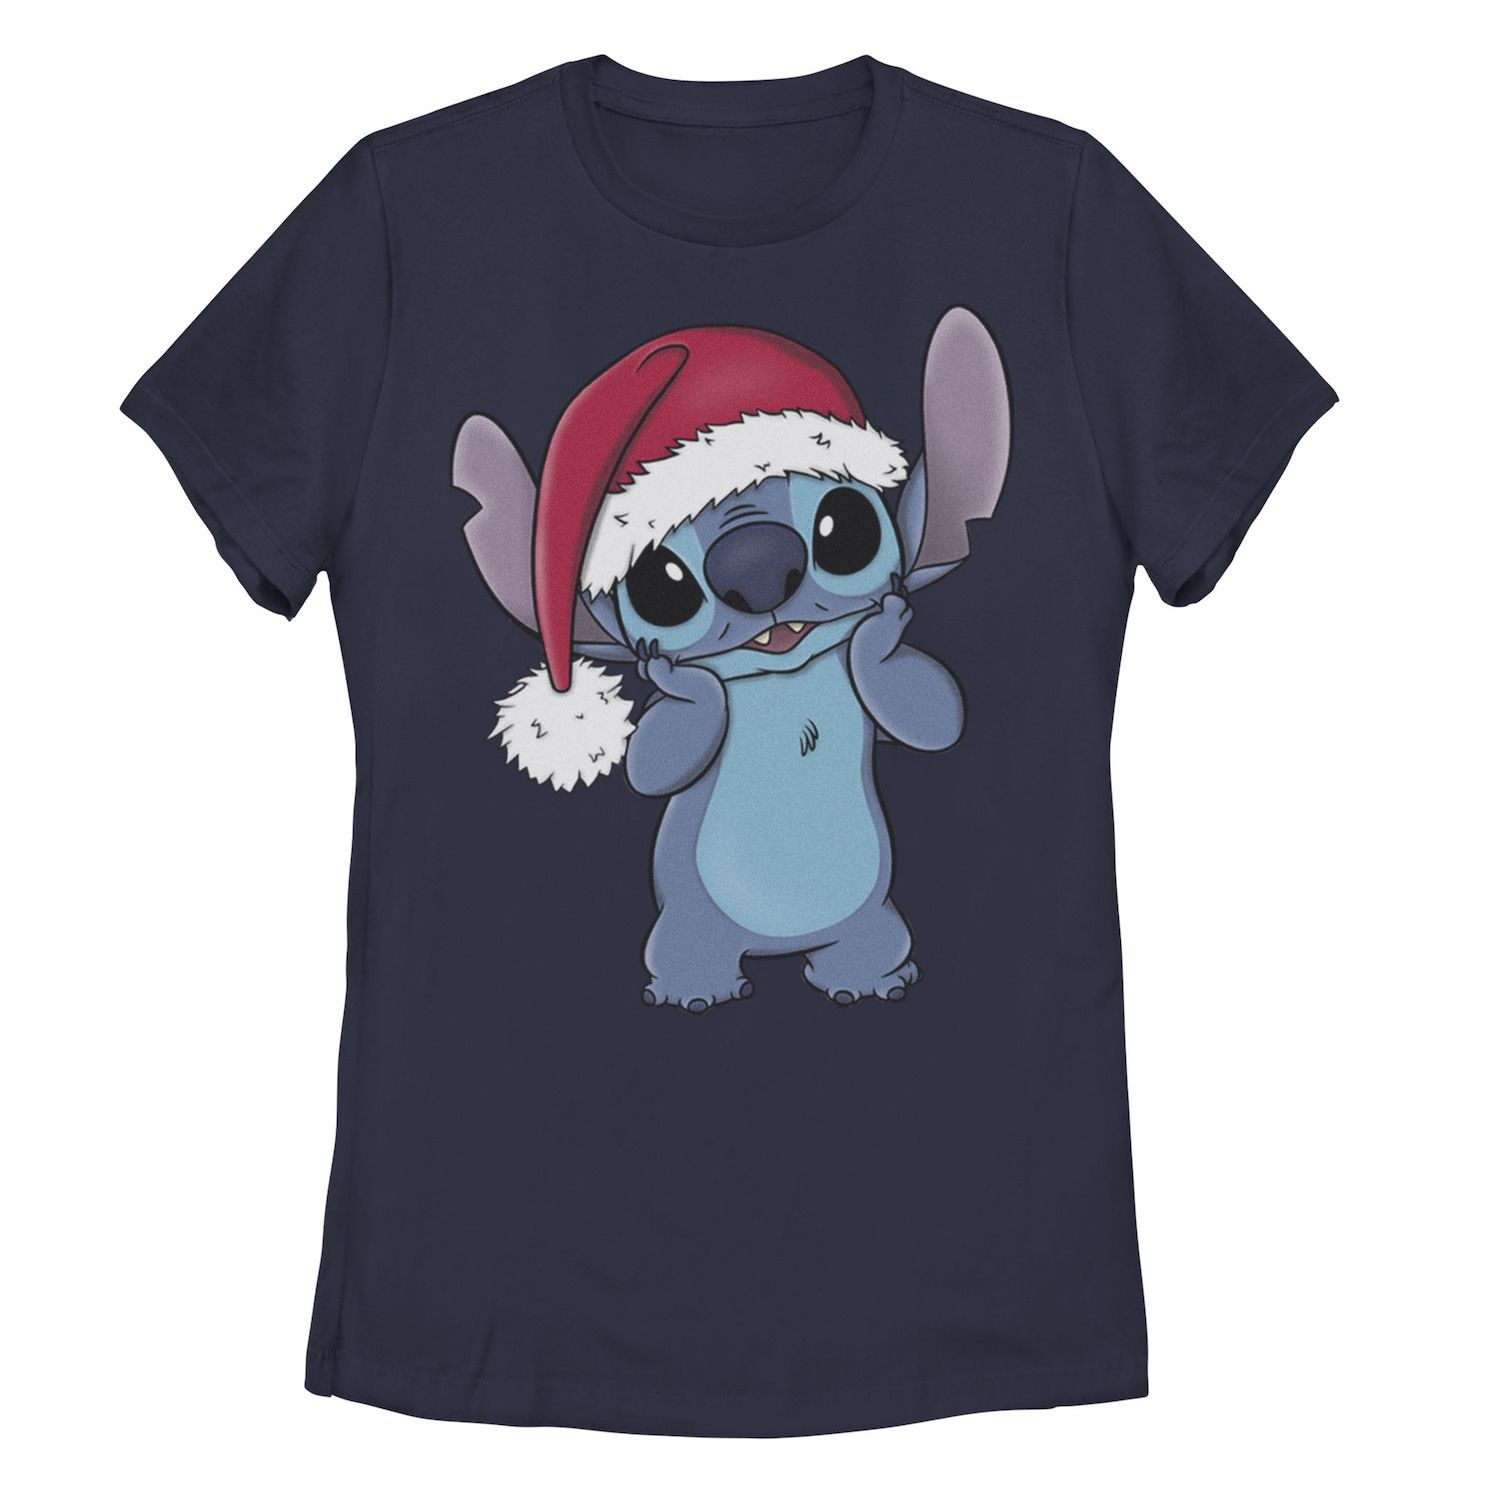 Детская футболка Disney's Lilo & Stitch с рисунком «Рождественский стежок Ugly Sweater» Disney стежок рюкзак disney мультиколор